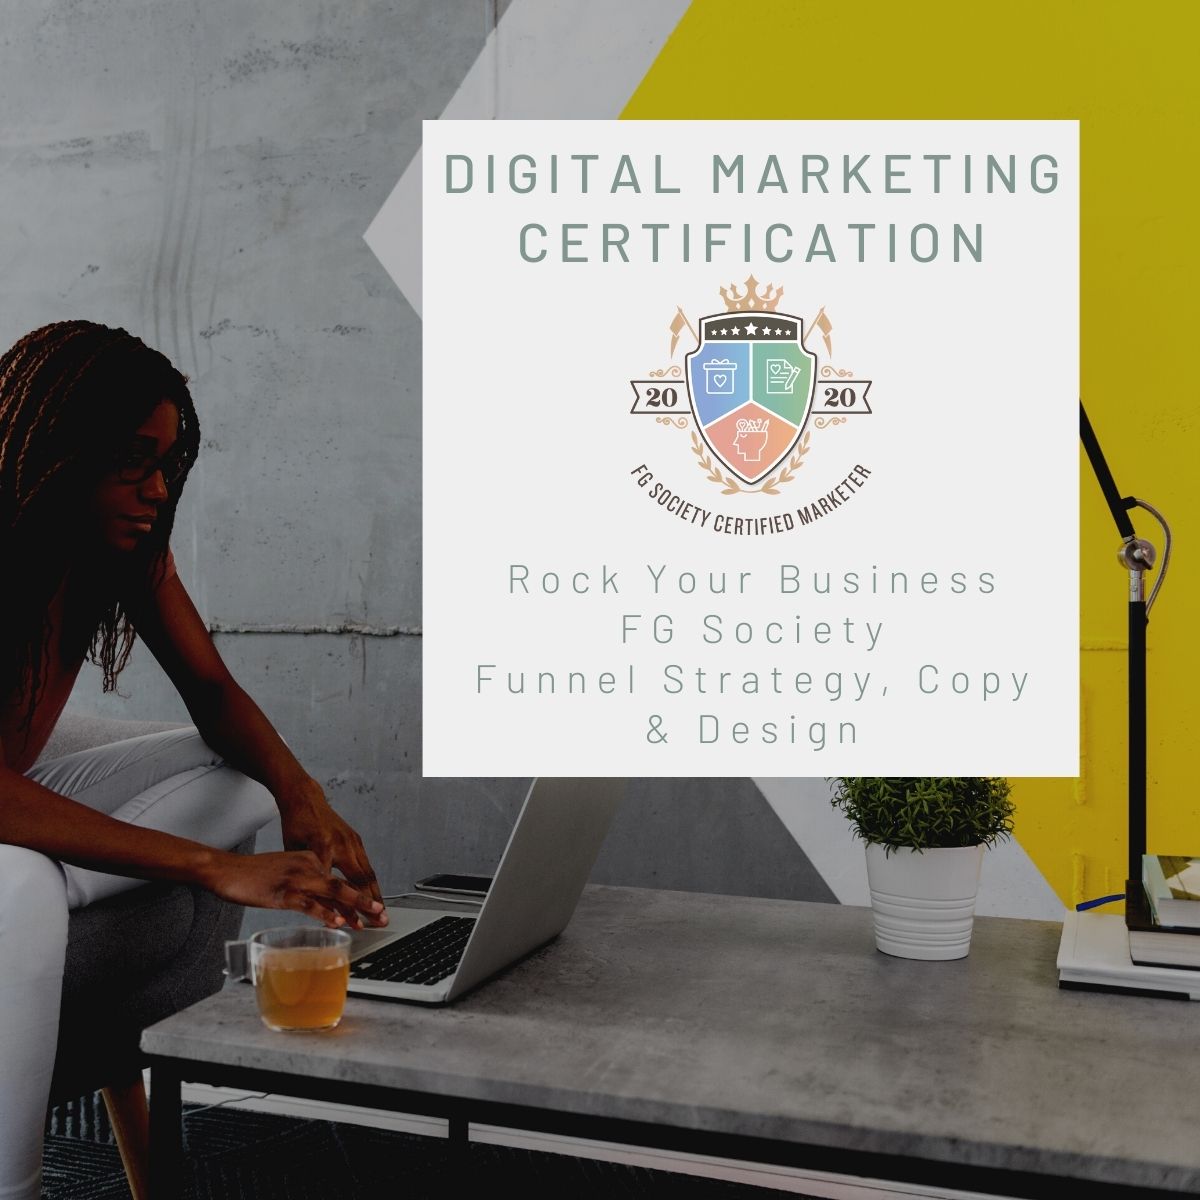 FG Society Digital Marketing Certification